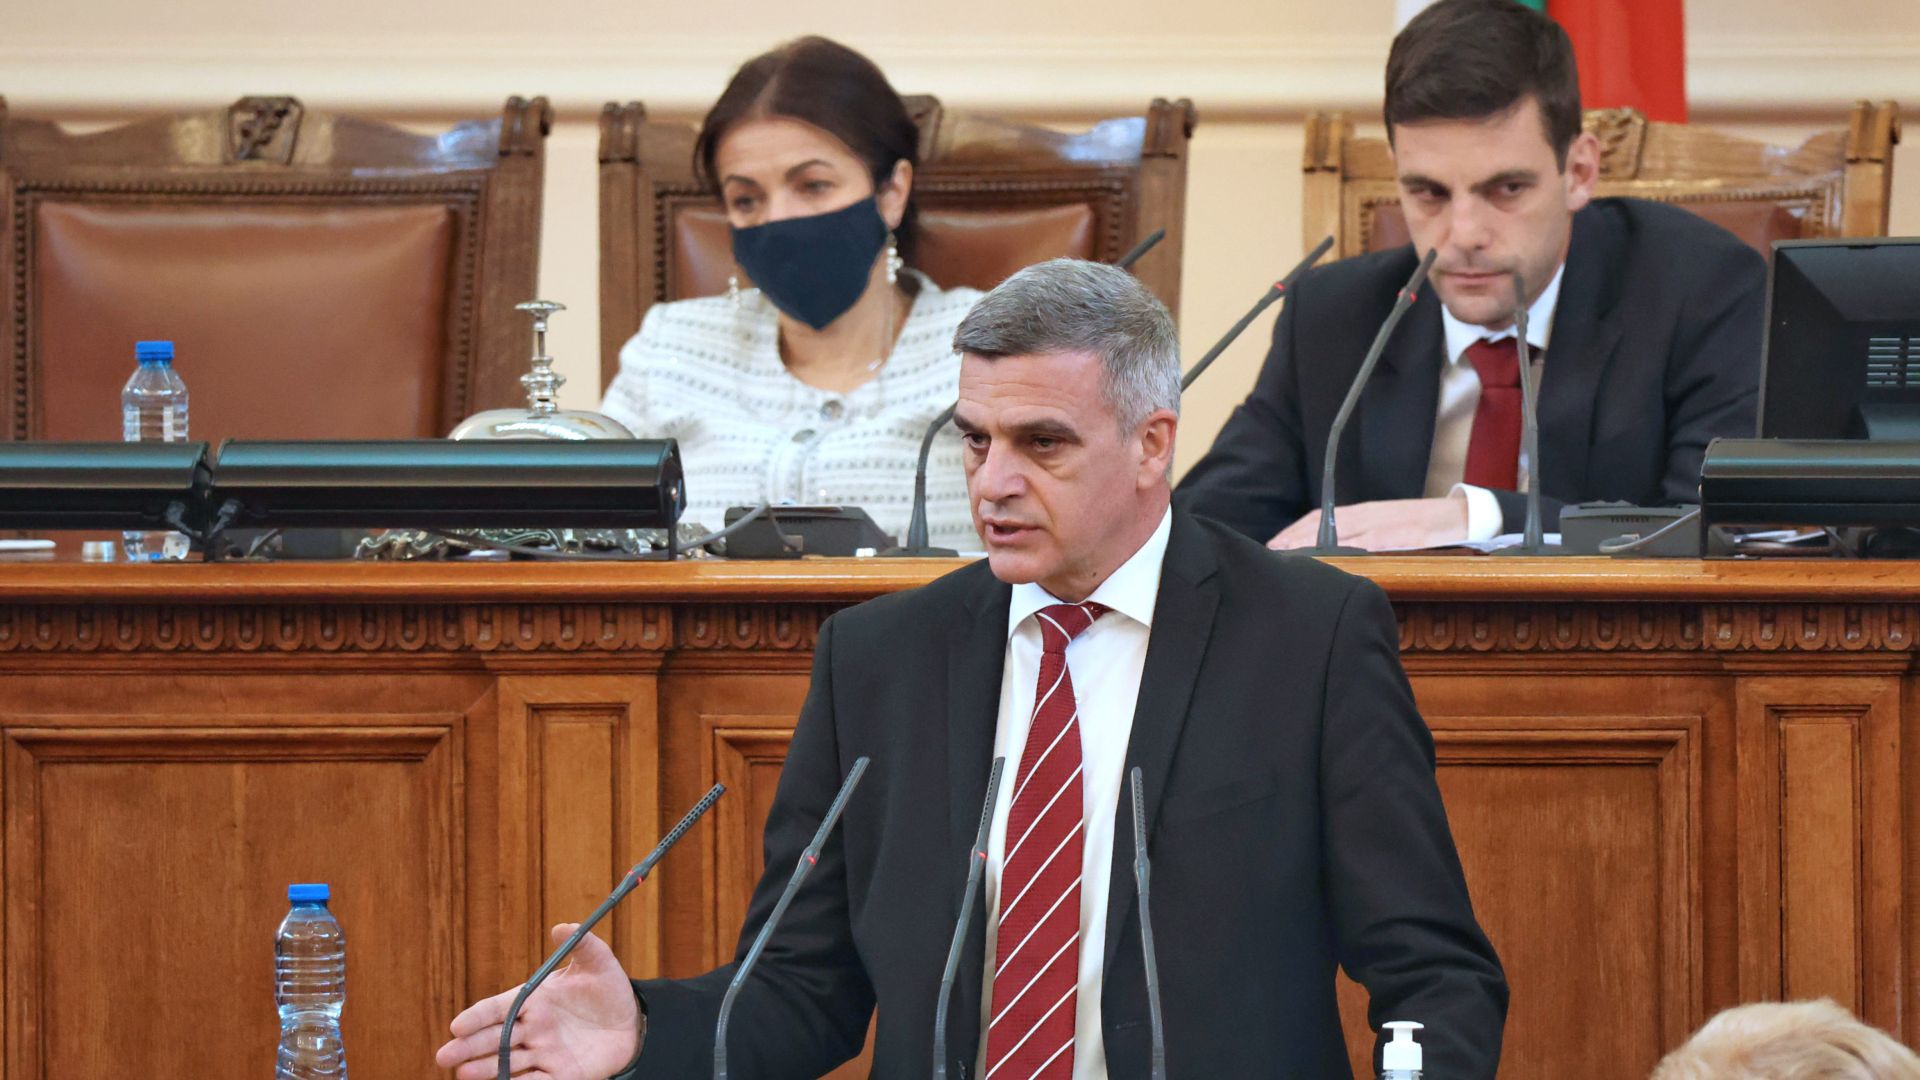 Стефан Янев пред депутатите: Икономиката ни се развива добре. Няма промяна за РС Макединия